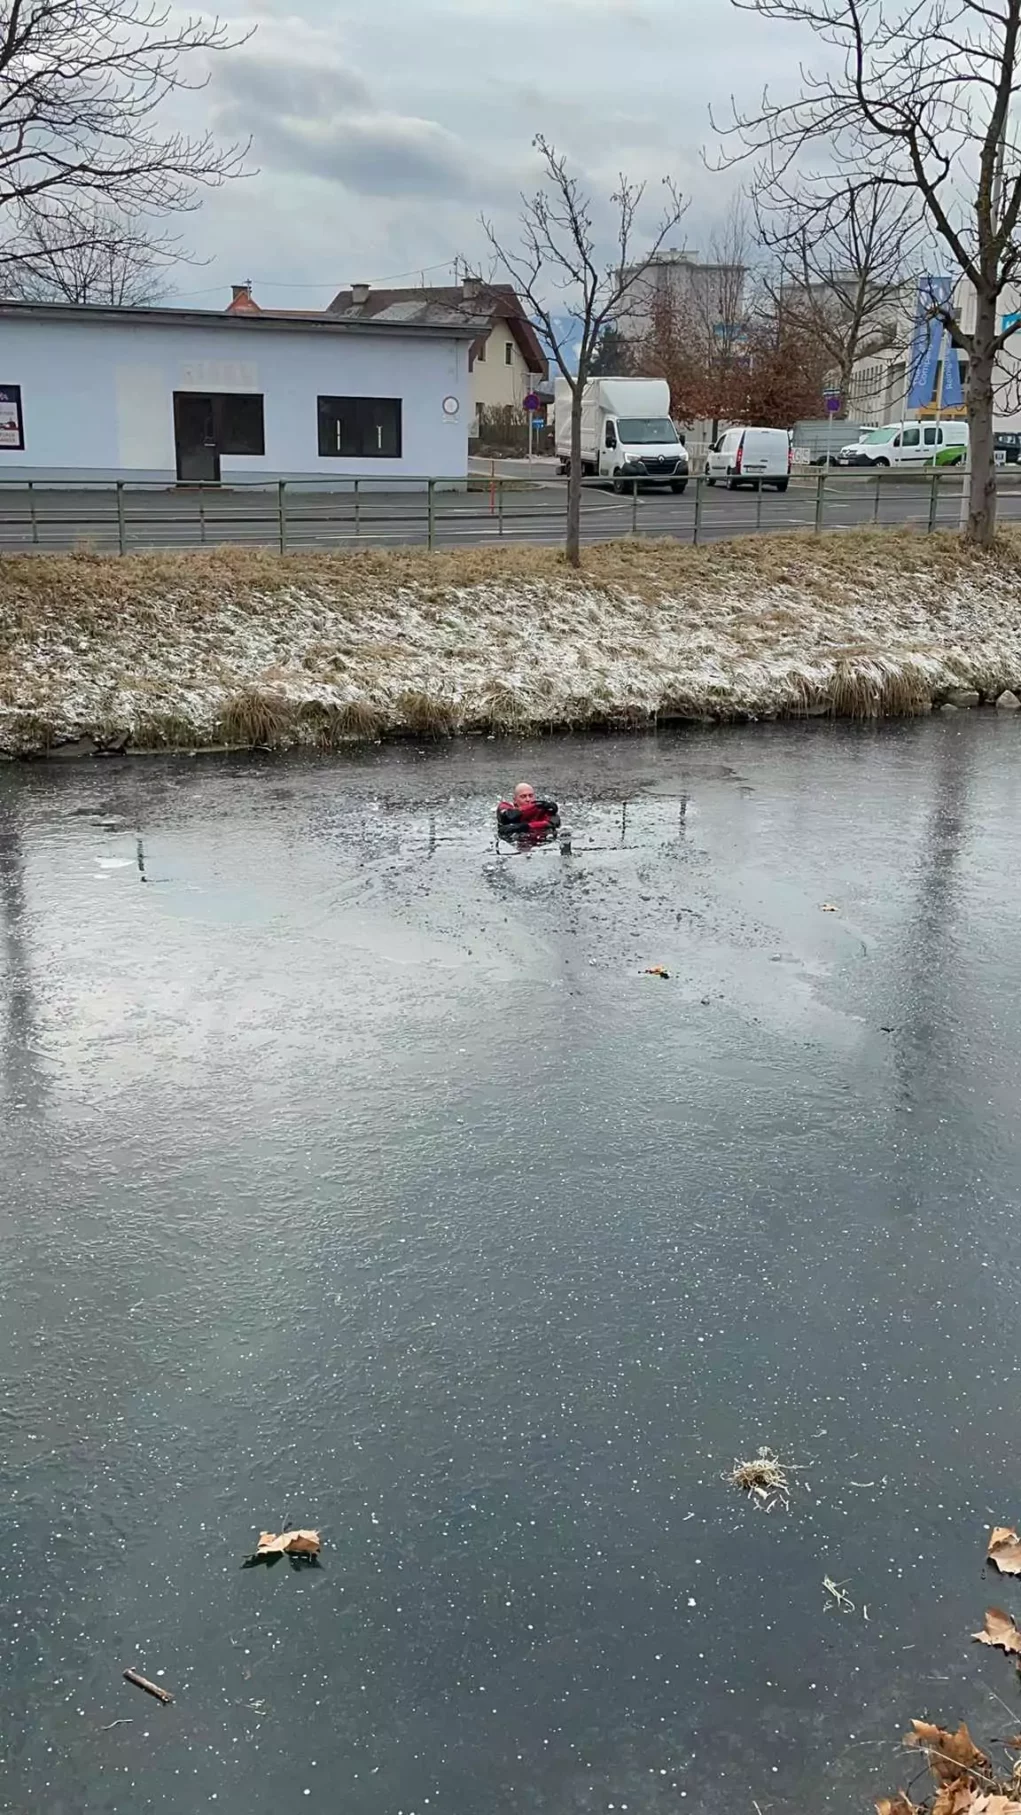 Foto in Beitrag von 5min.at: Zu sehen ist ein im Eis eingebrochener Mann.